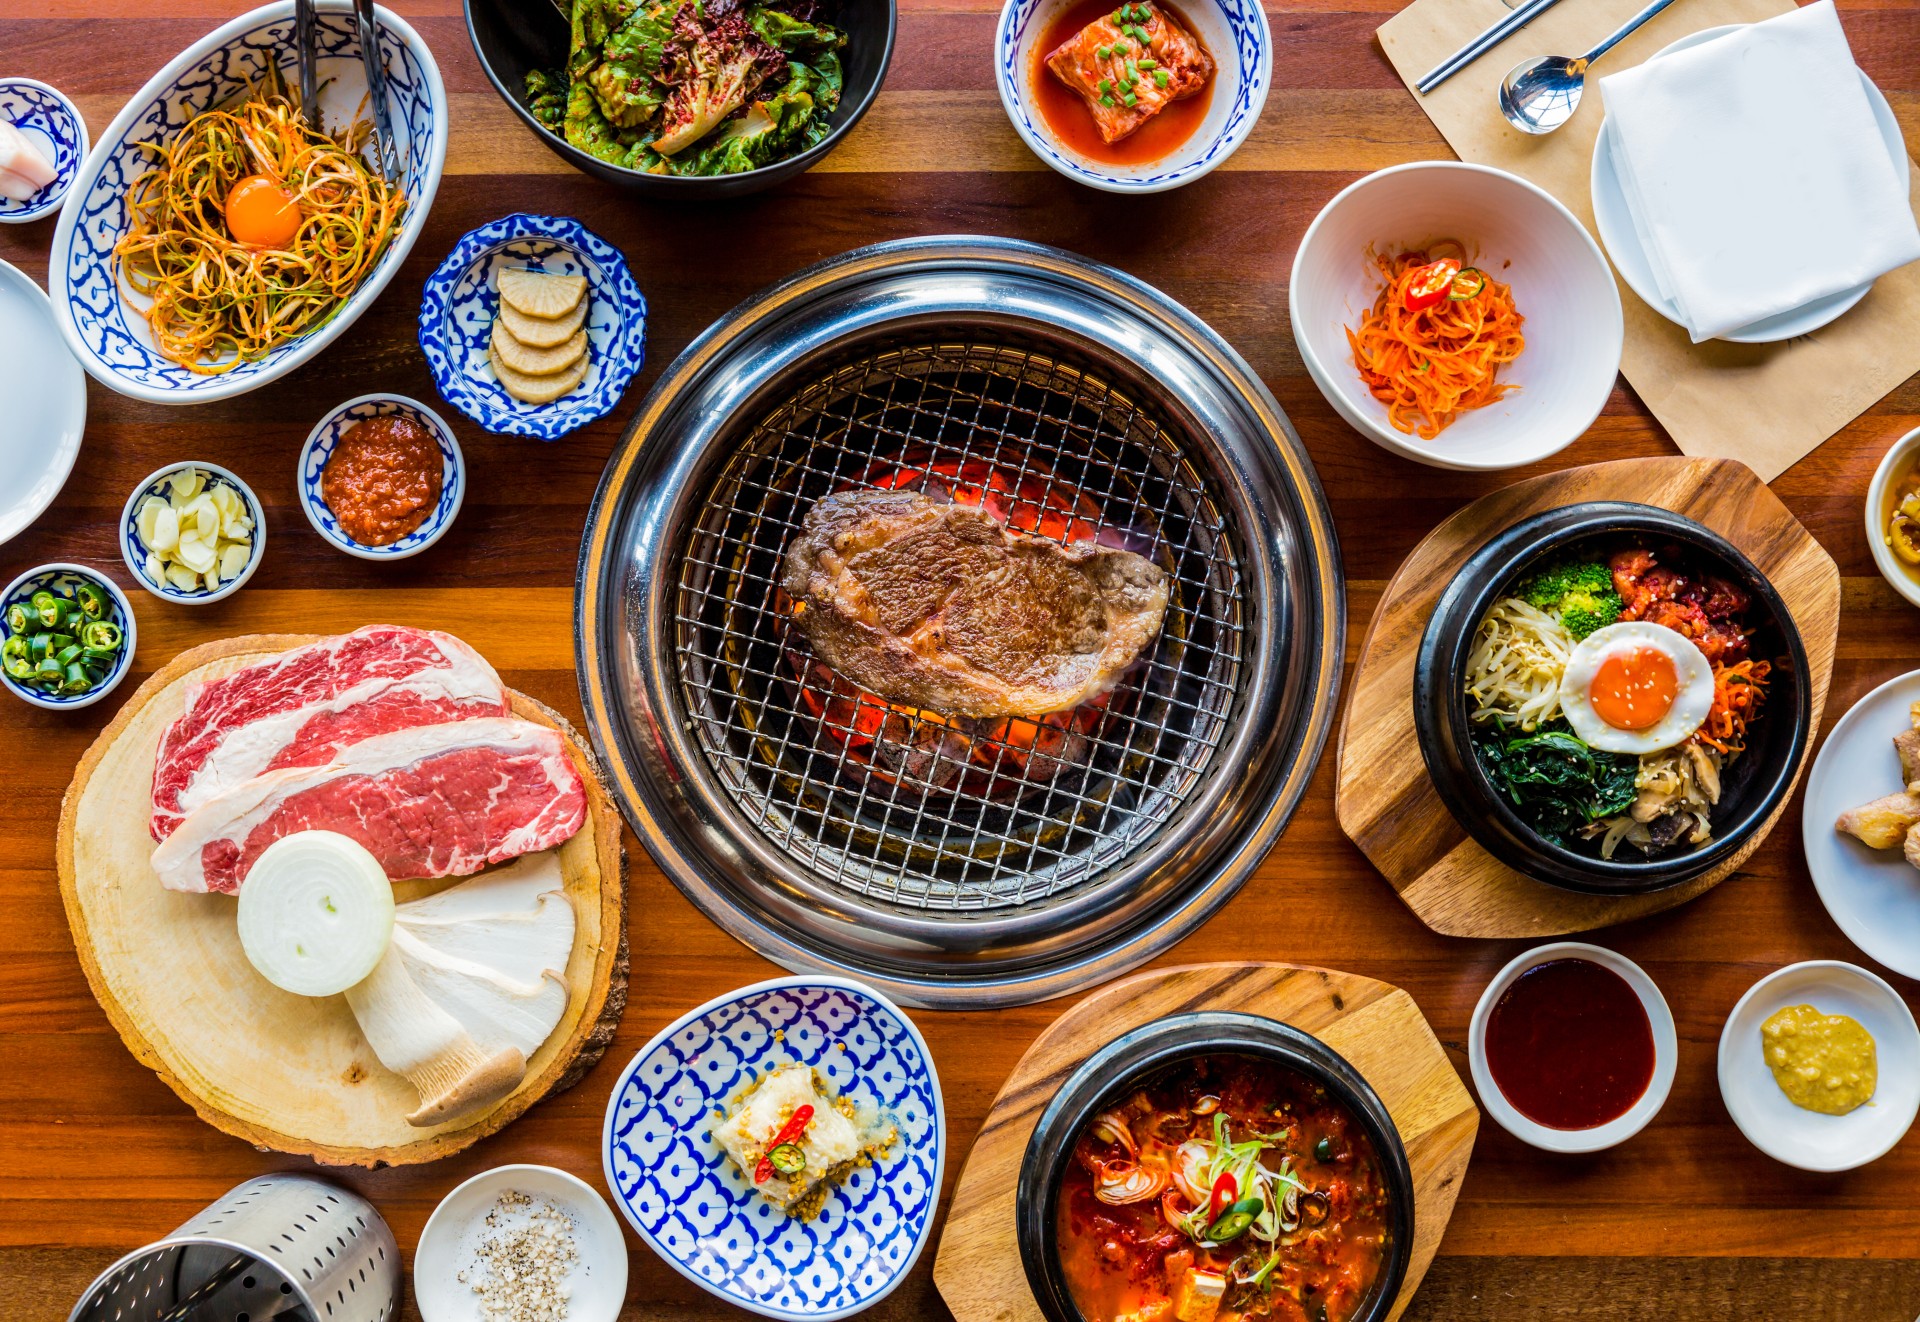 Hot pot or Korean BBQ? Enjoy an all-you-can-eat adventure in Redmond